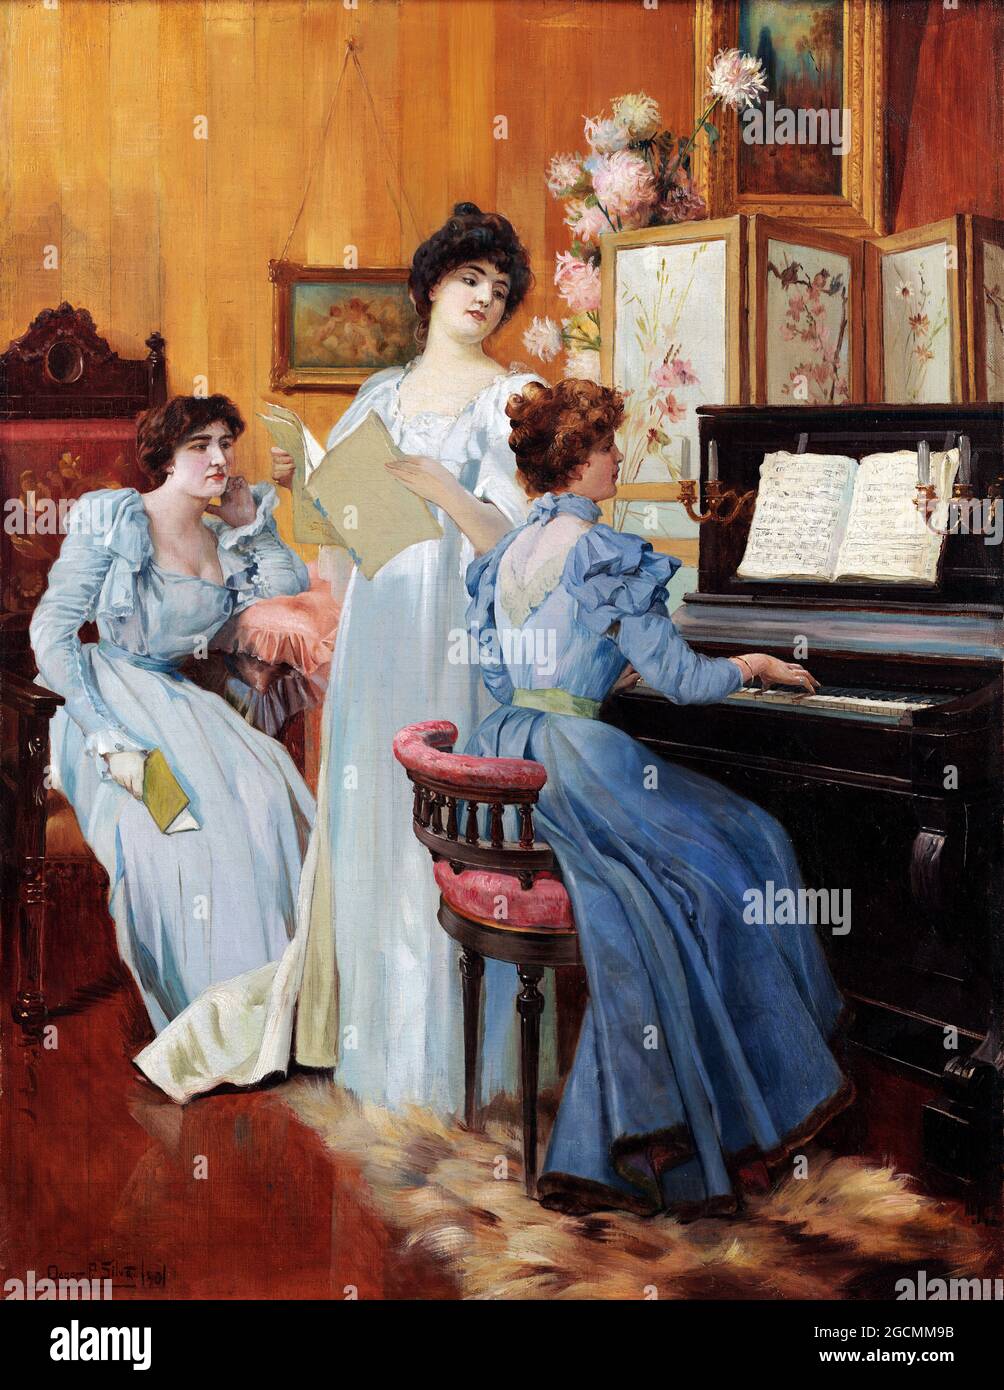 Hora da Musica by Oscar Pereira da Silva (1867-1939), oil on canvas, 1901 Stock Photo